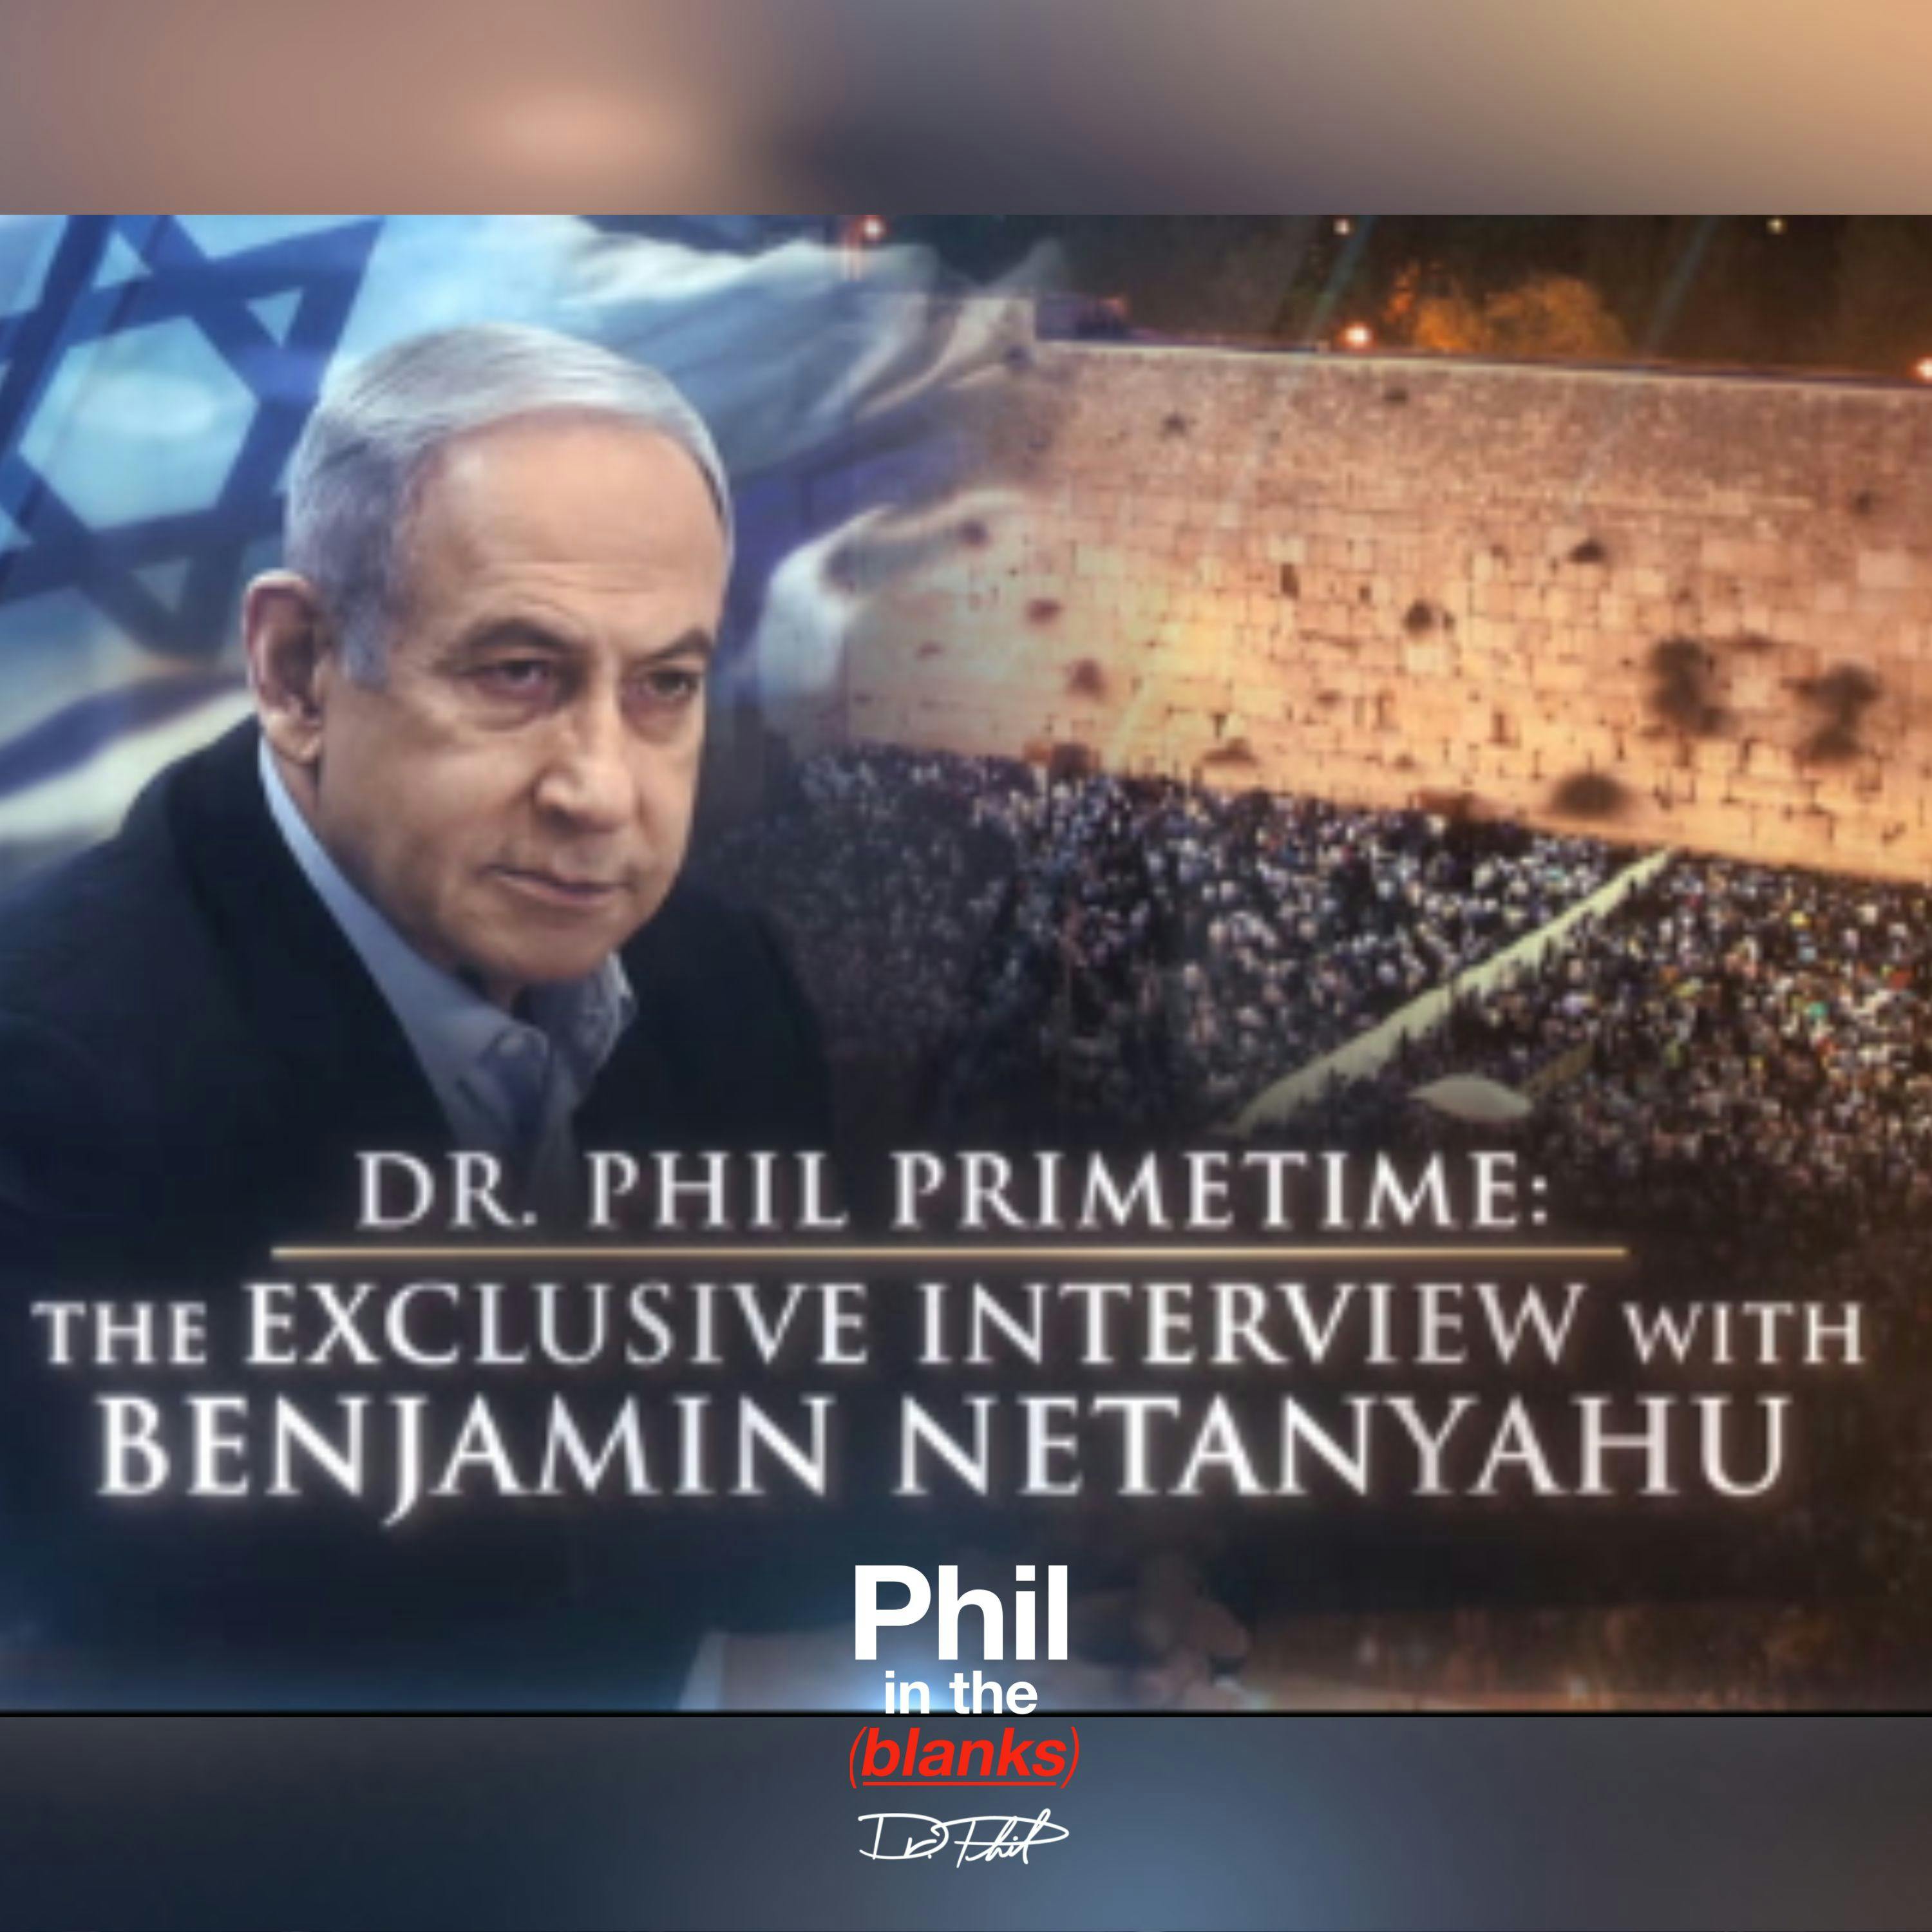 The Exclusive Interview with Benjamin Netanyahu